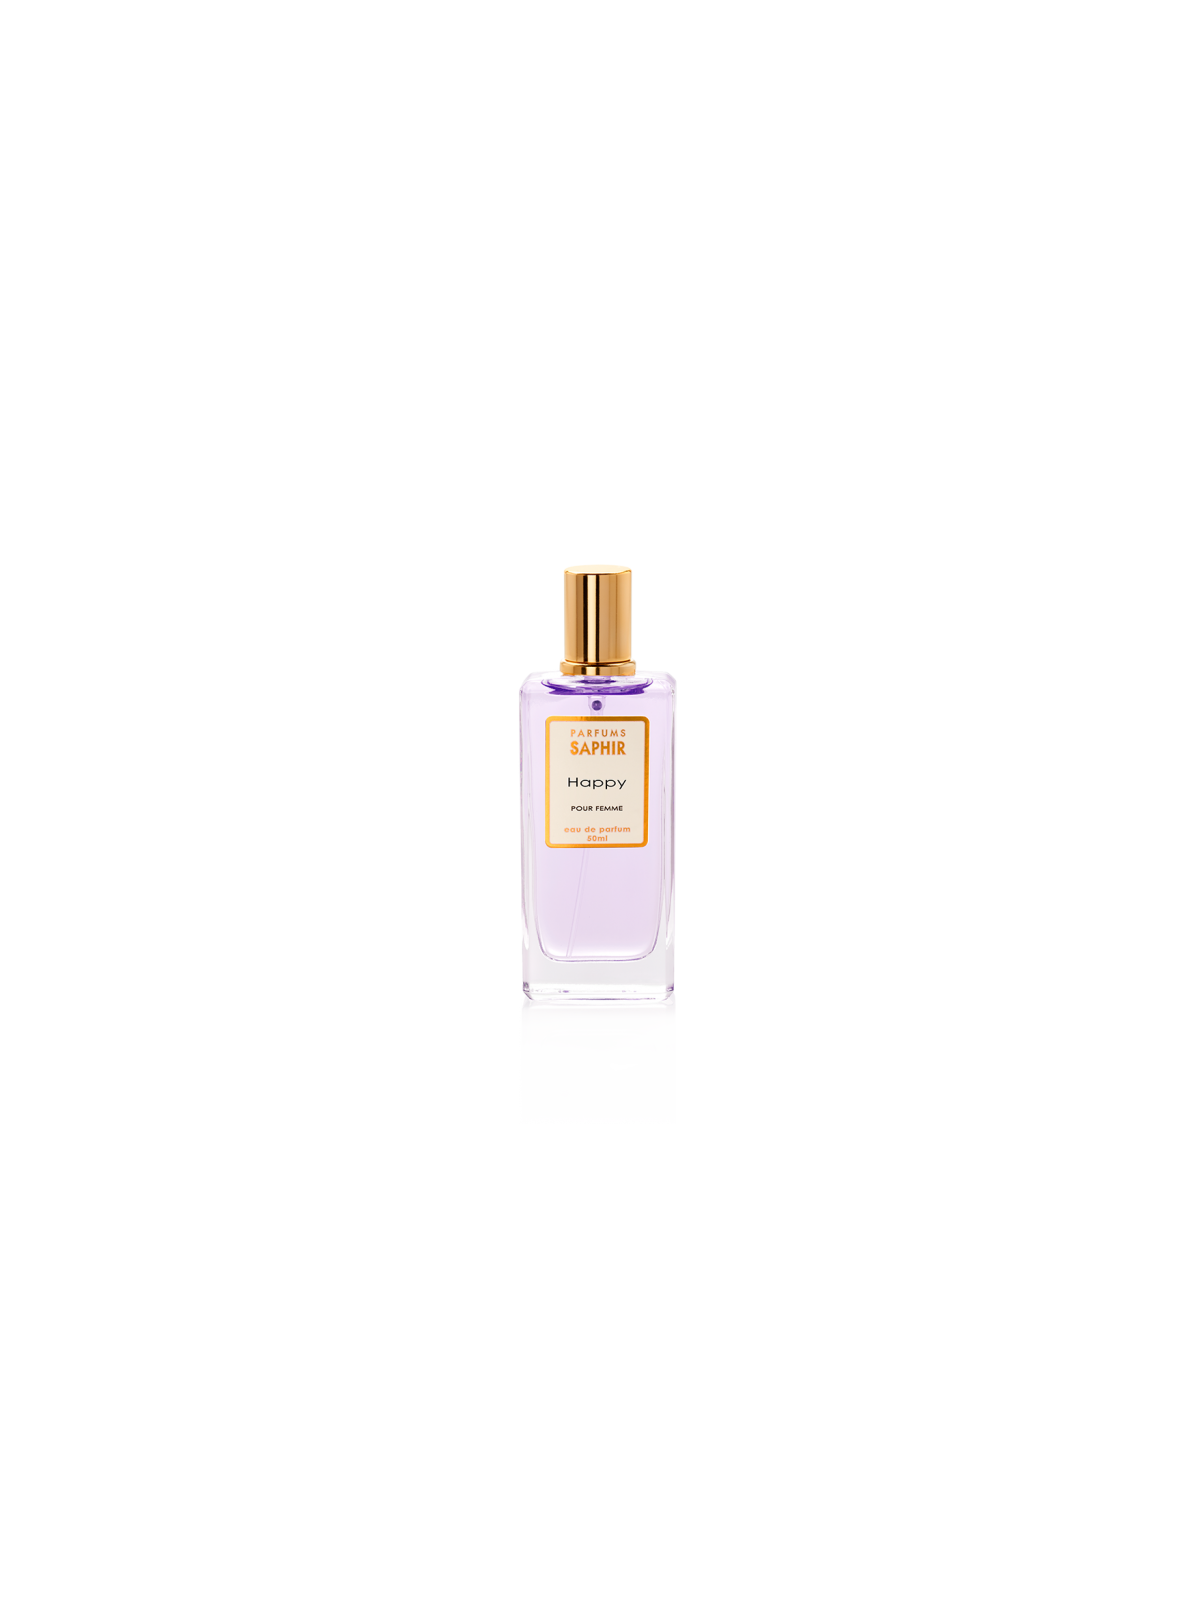 Comprar Perfume Saphir Happy 50ml en Perfumes para mujer por sólo 4,95 € o un precio específico de 4,95 € en Thalie Care